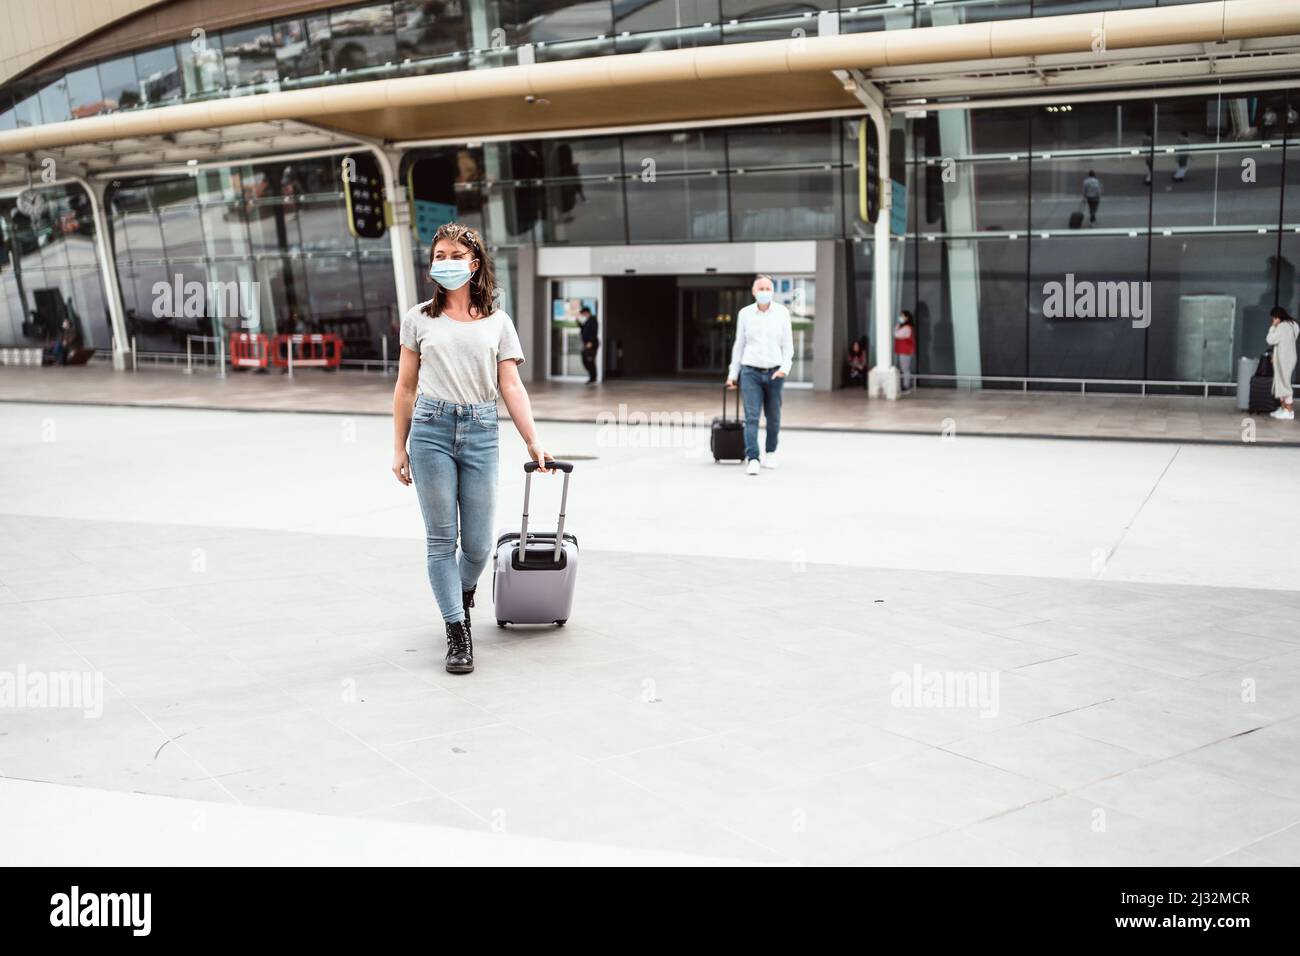 Une jeune femme quittant l'aéroport avec ses bagages prêts à découvrir une nouvelle destination Banque D'Images